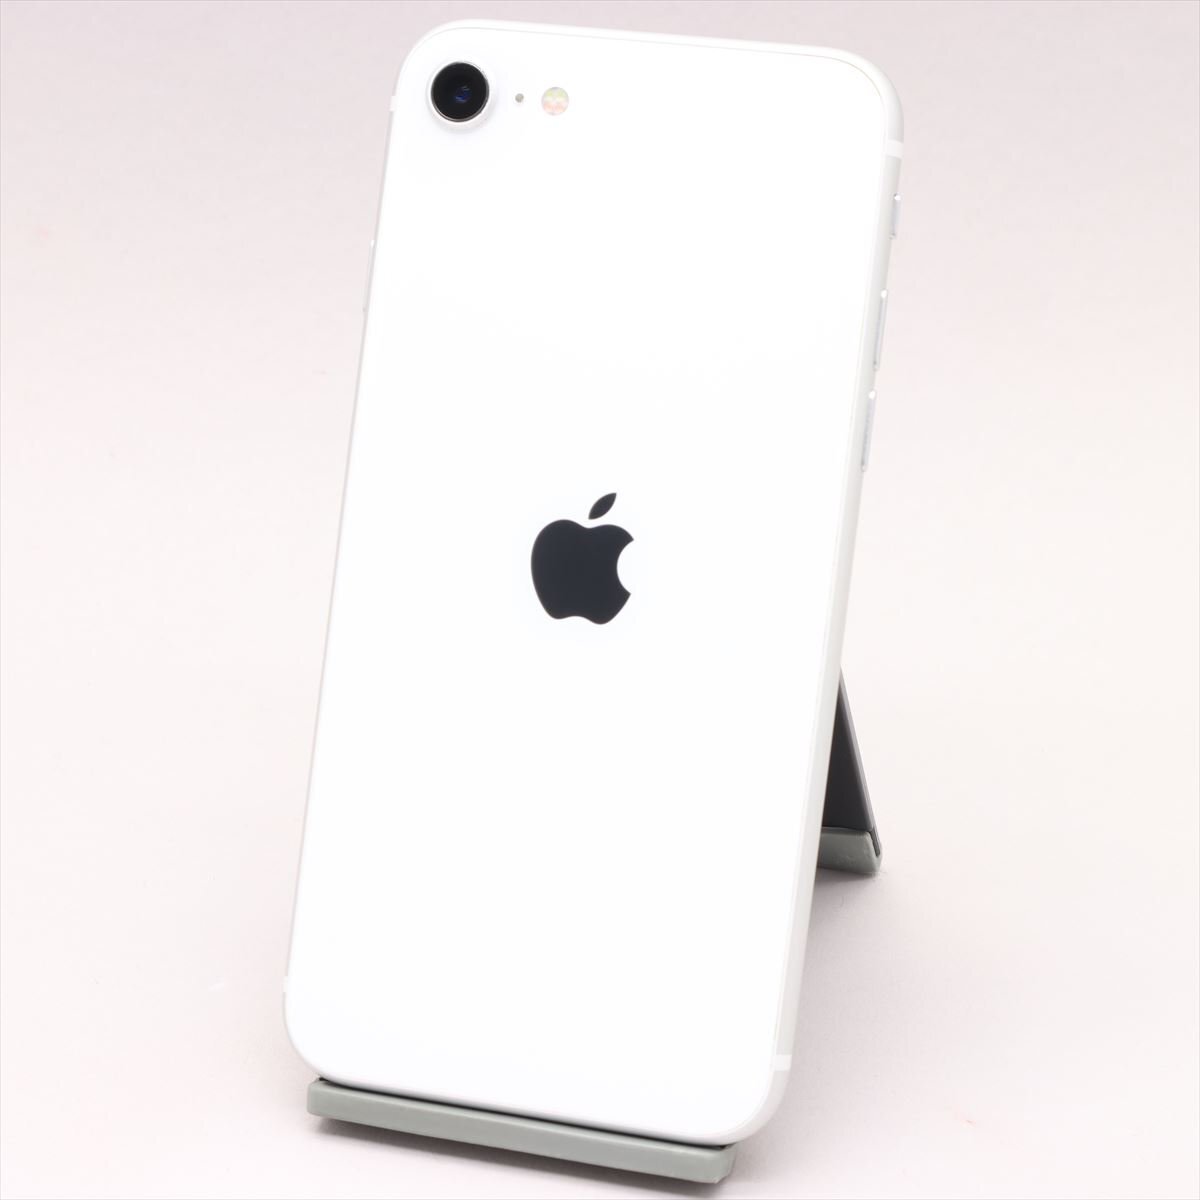 Apple iPhone SE 第2世代 64GB iphonese レッド 箱 - スマートフォン本体